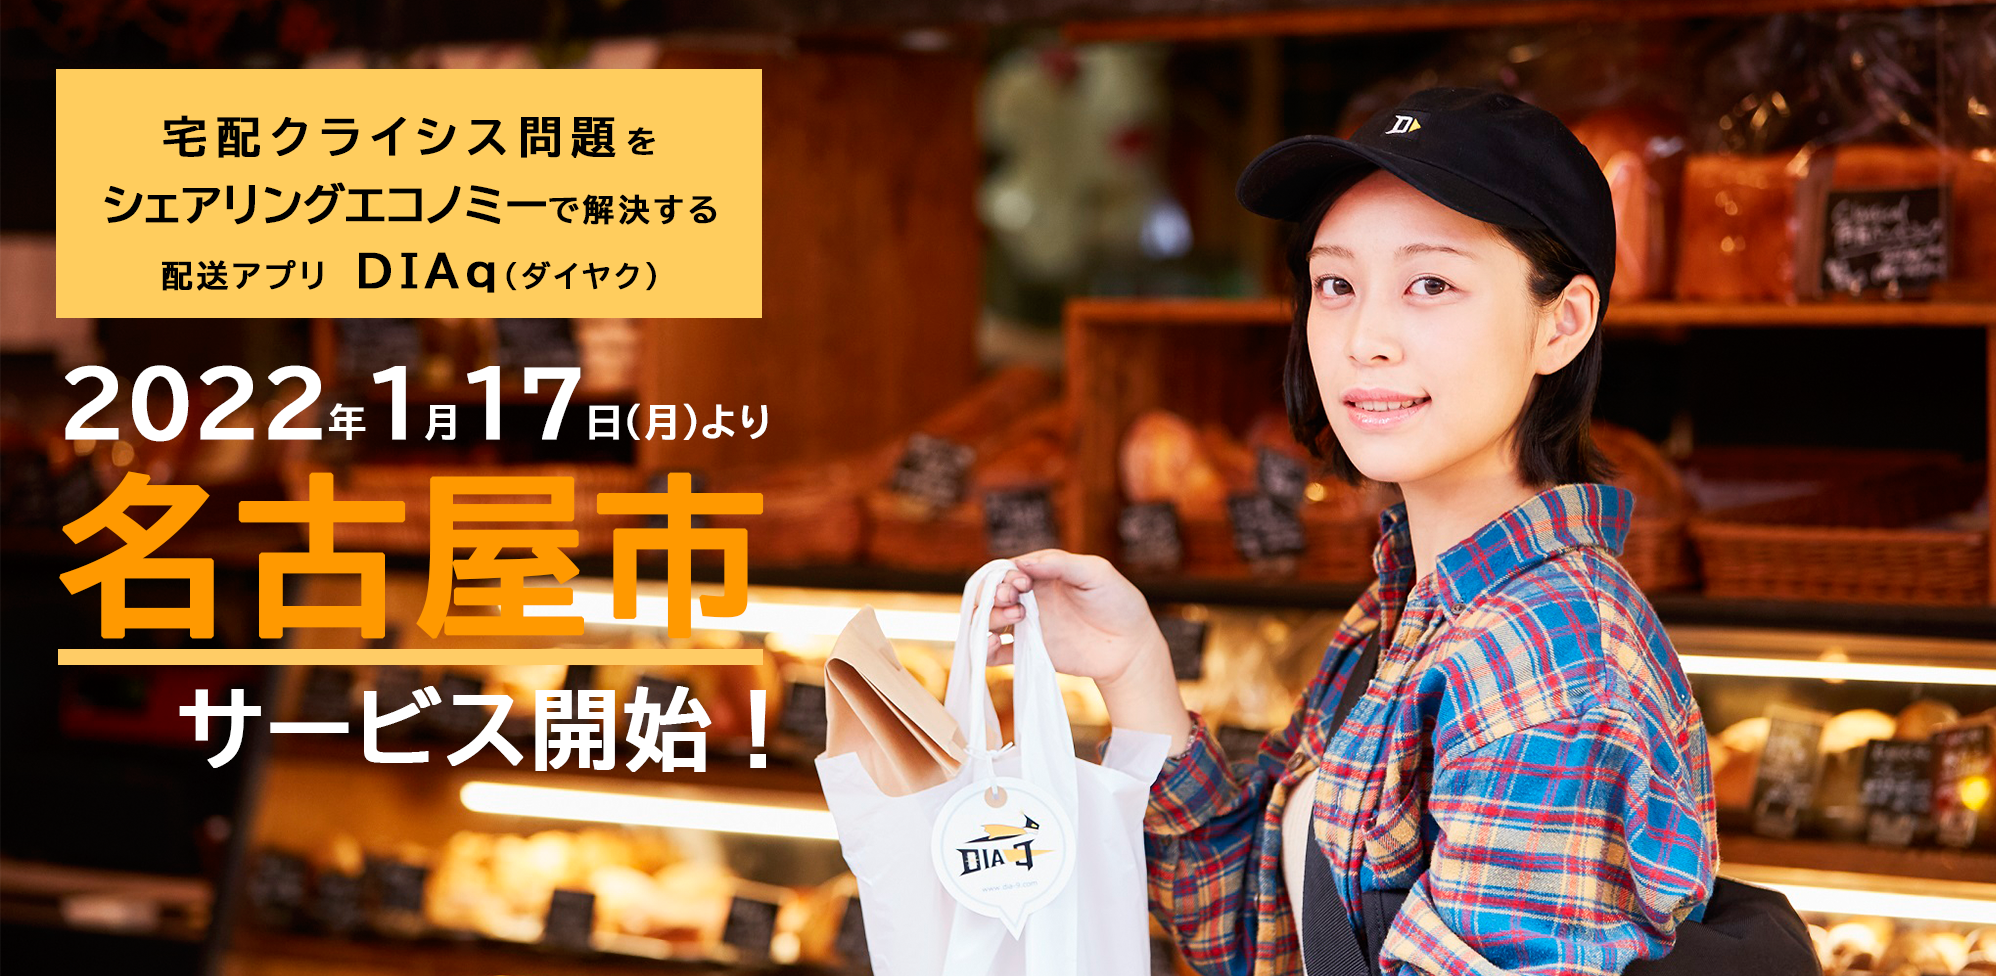 日本トータルテレマーケティング、
美容専門育成プログラムを構築　
美容化粧品通販の売上拡大や解約阻止に貢献